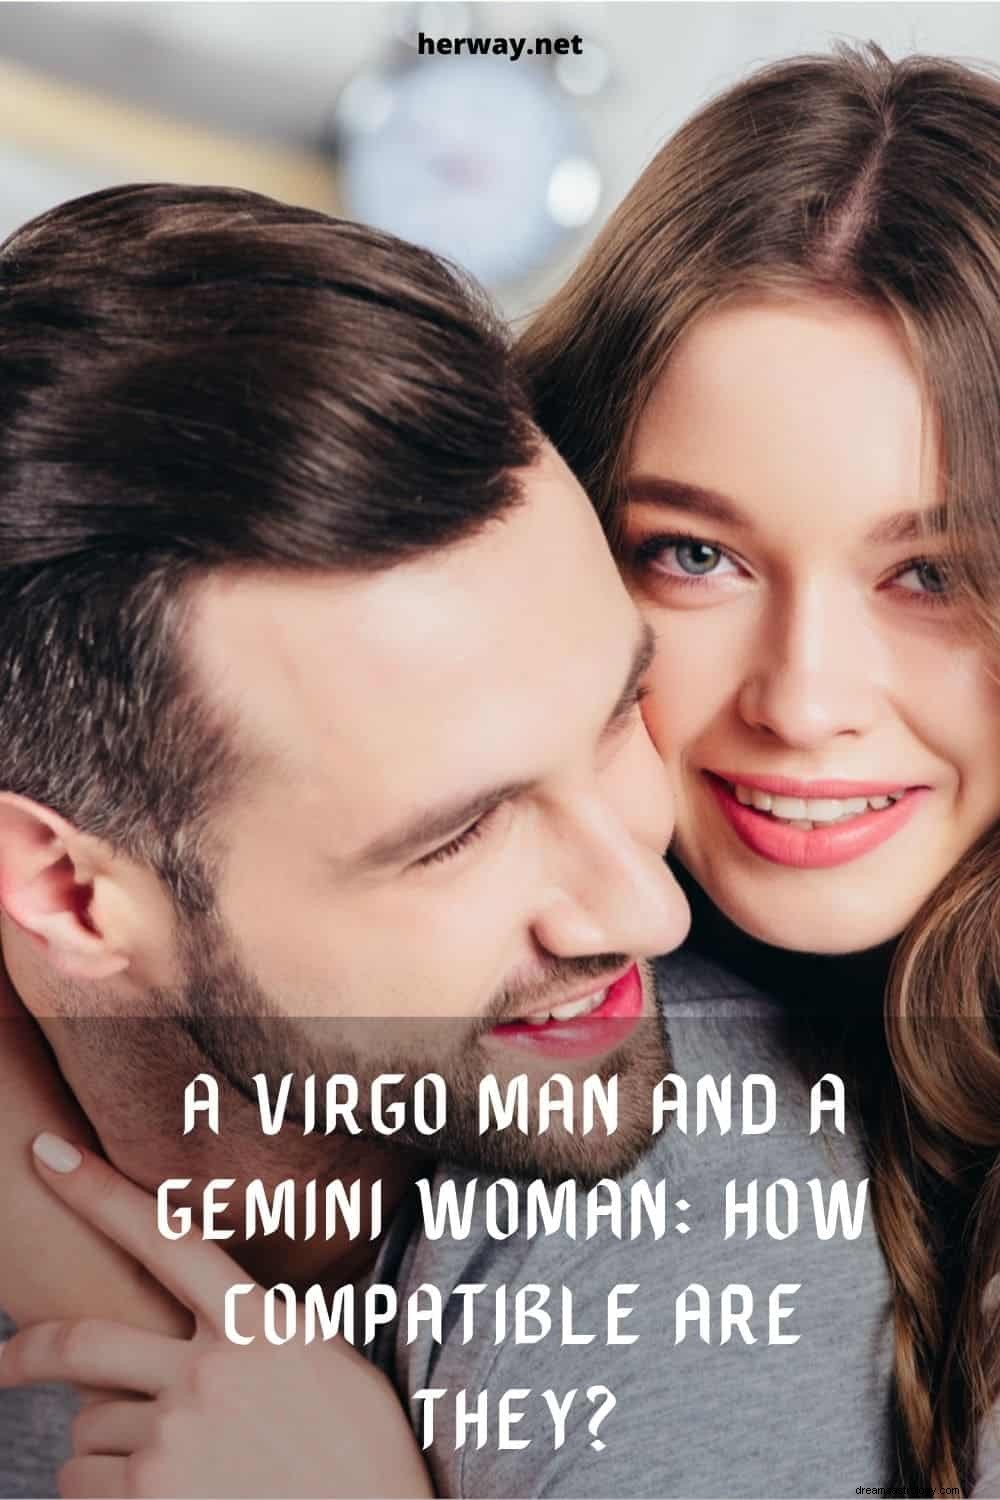 Matrimonio amoroso entre un hombre Virgo y una mujer Géminis:¿qué tan compatibles son?